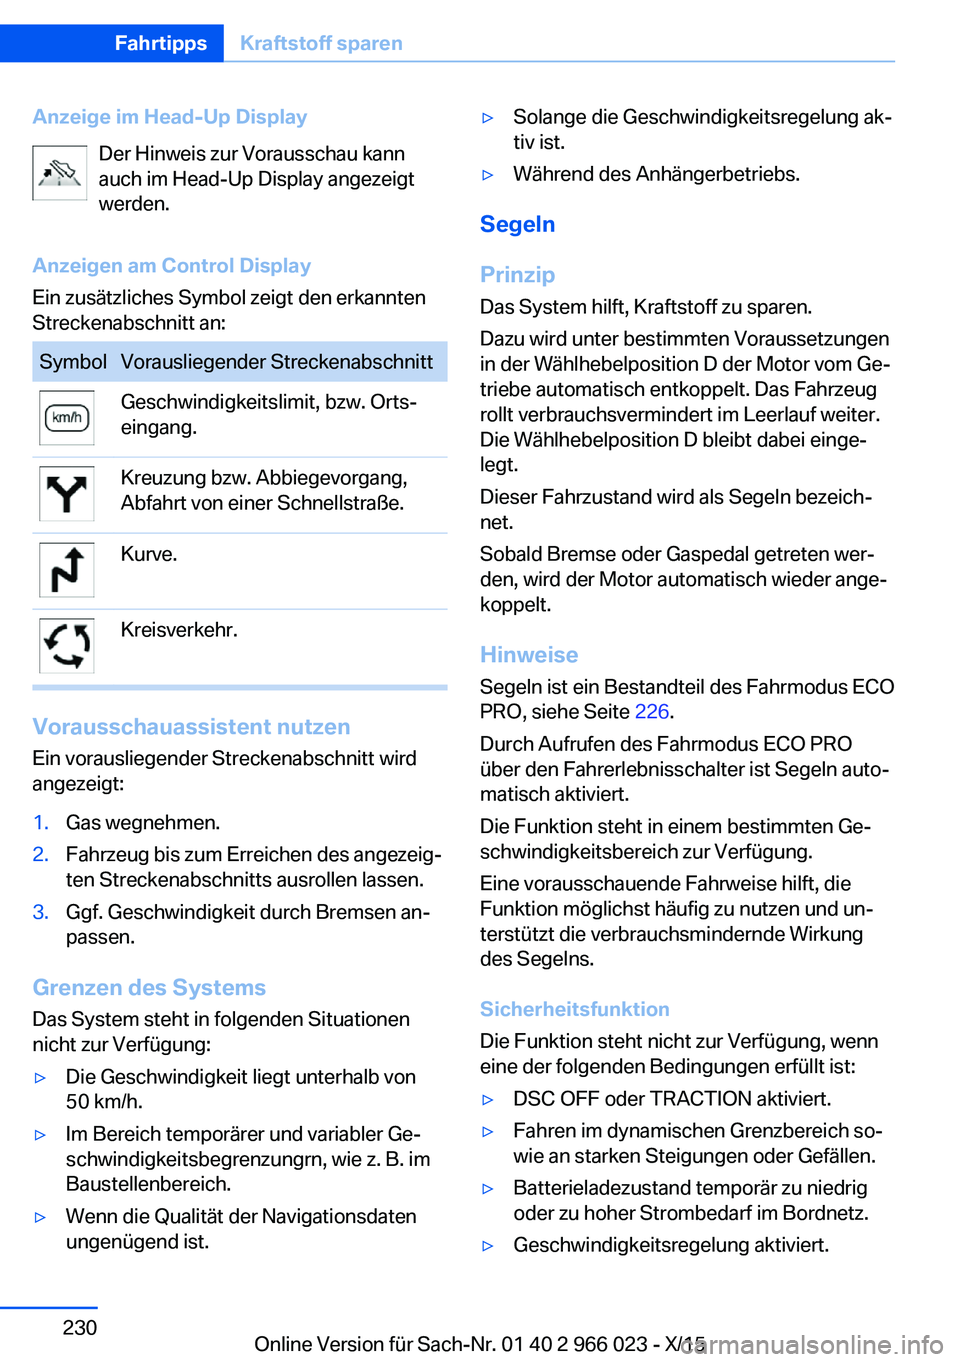 BMW X6 2016  Betriebsanleitungen (in German) Anzeige im Head-Up DisplayDer Hinweis zur Vorausschau kann
auch im Head-Up Display angezeigt
werden.
Anzeigen am Control Display
Ein zusätzliches Symbol zeigt den erkannten
Streckenabschnitt an:Symbo